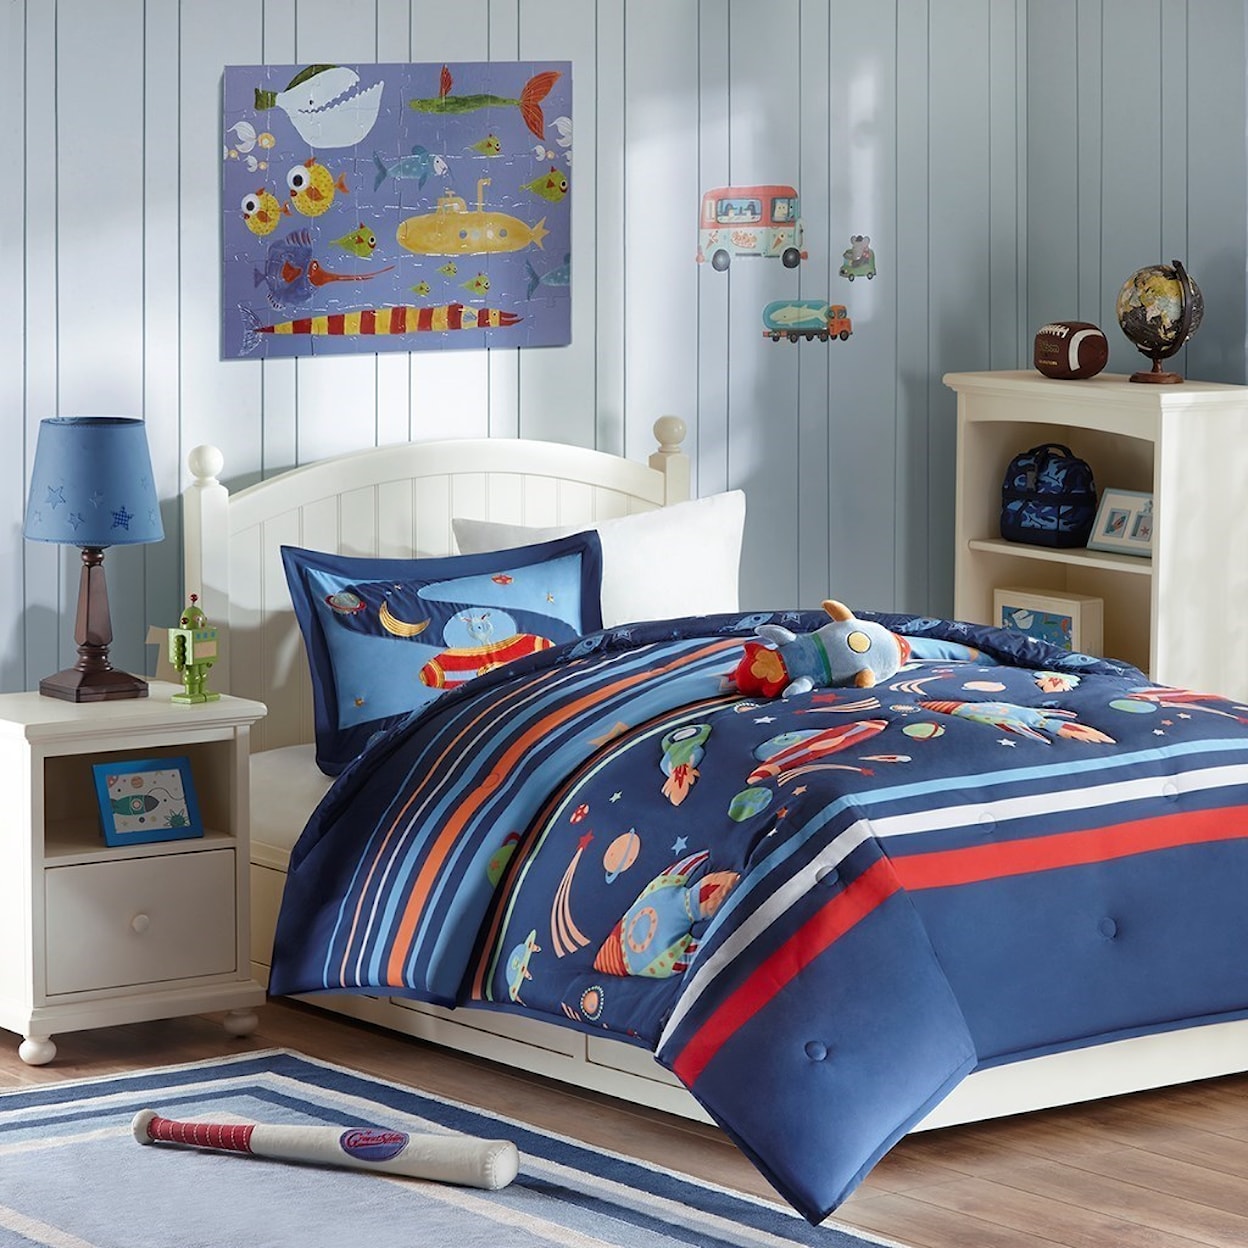 JLA Home Mi Zone Kids Full/Queen Comforter Set